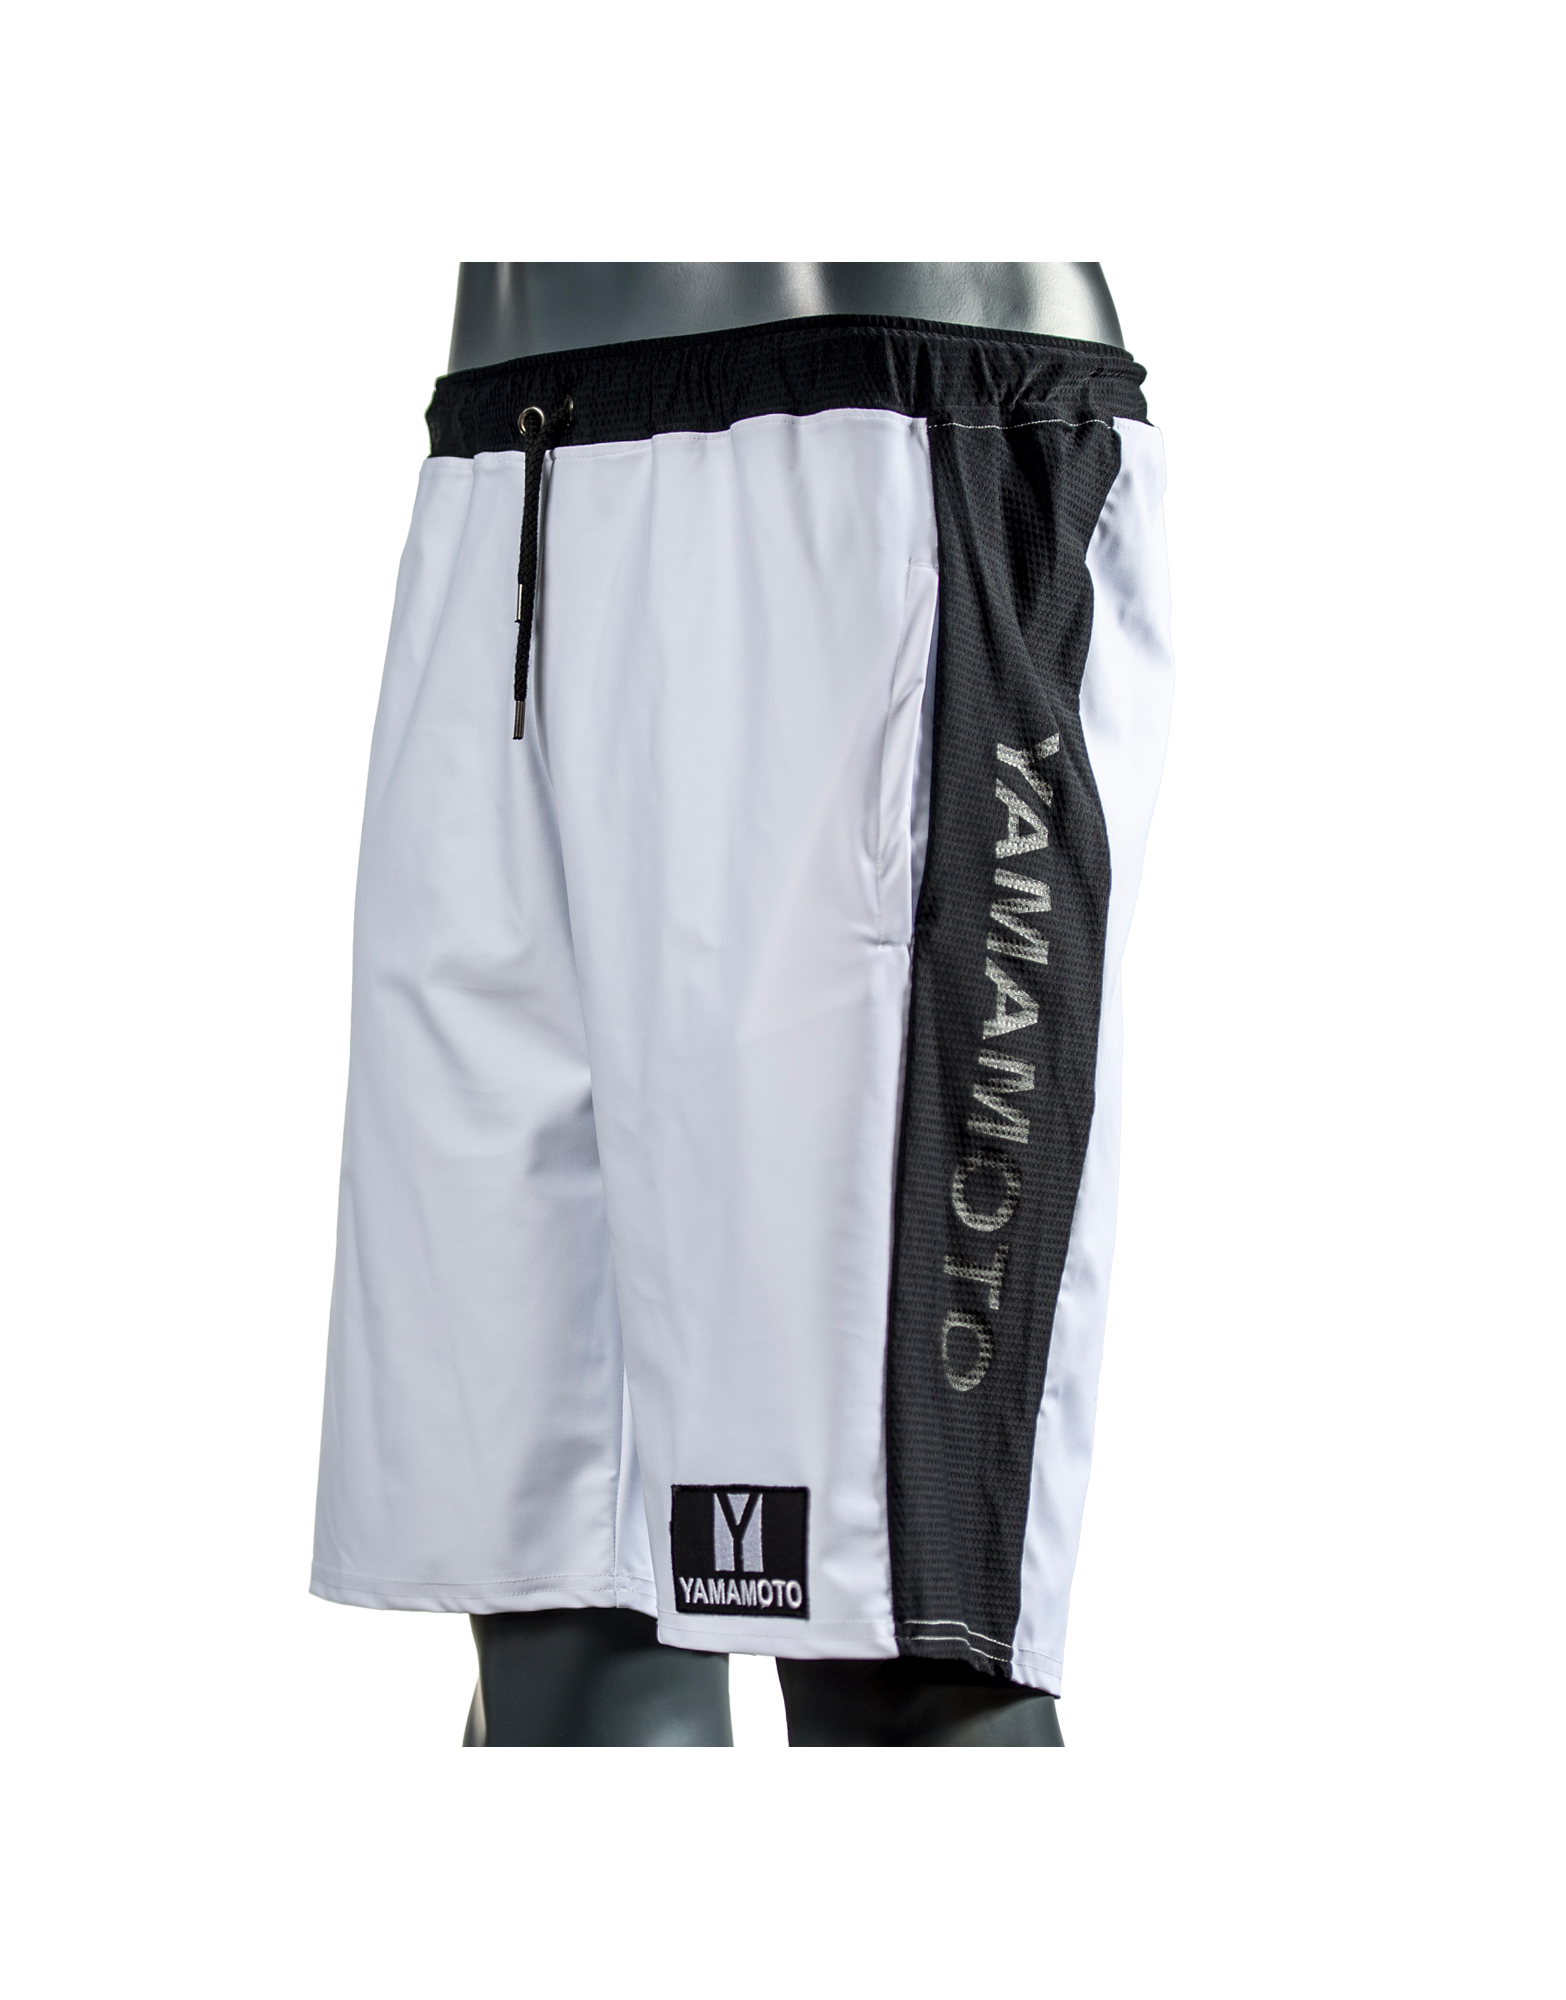 gas Incorrecto Unirse Man Mesh Shorts de Yamamoto outfit, Color: Blanco - iafstore.com